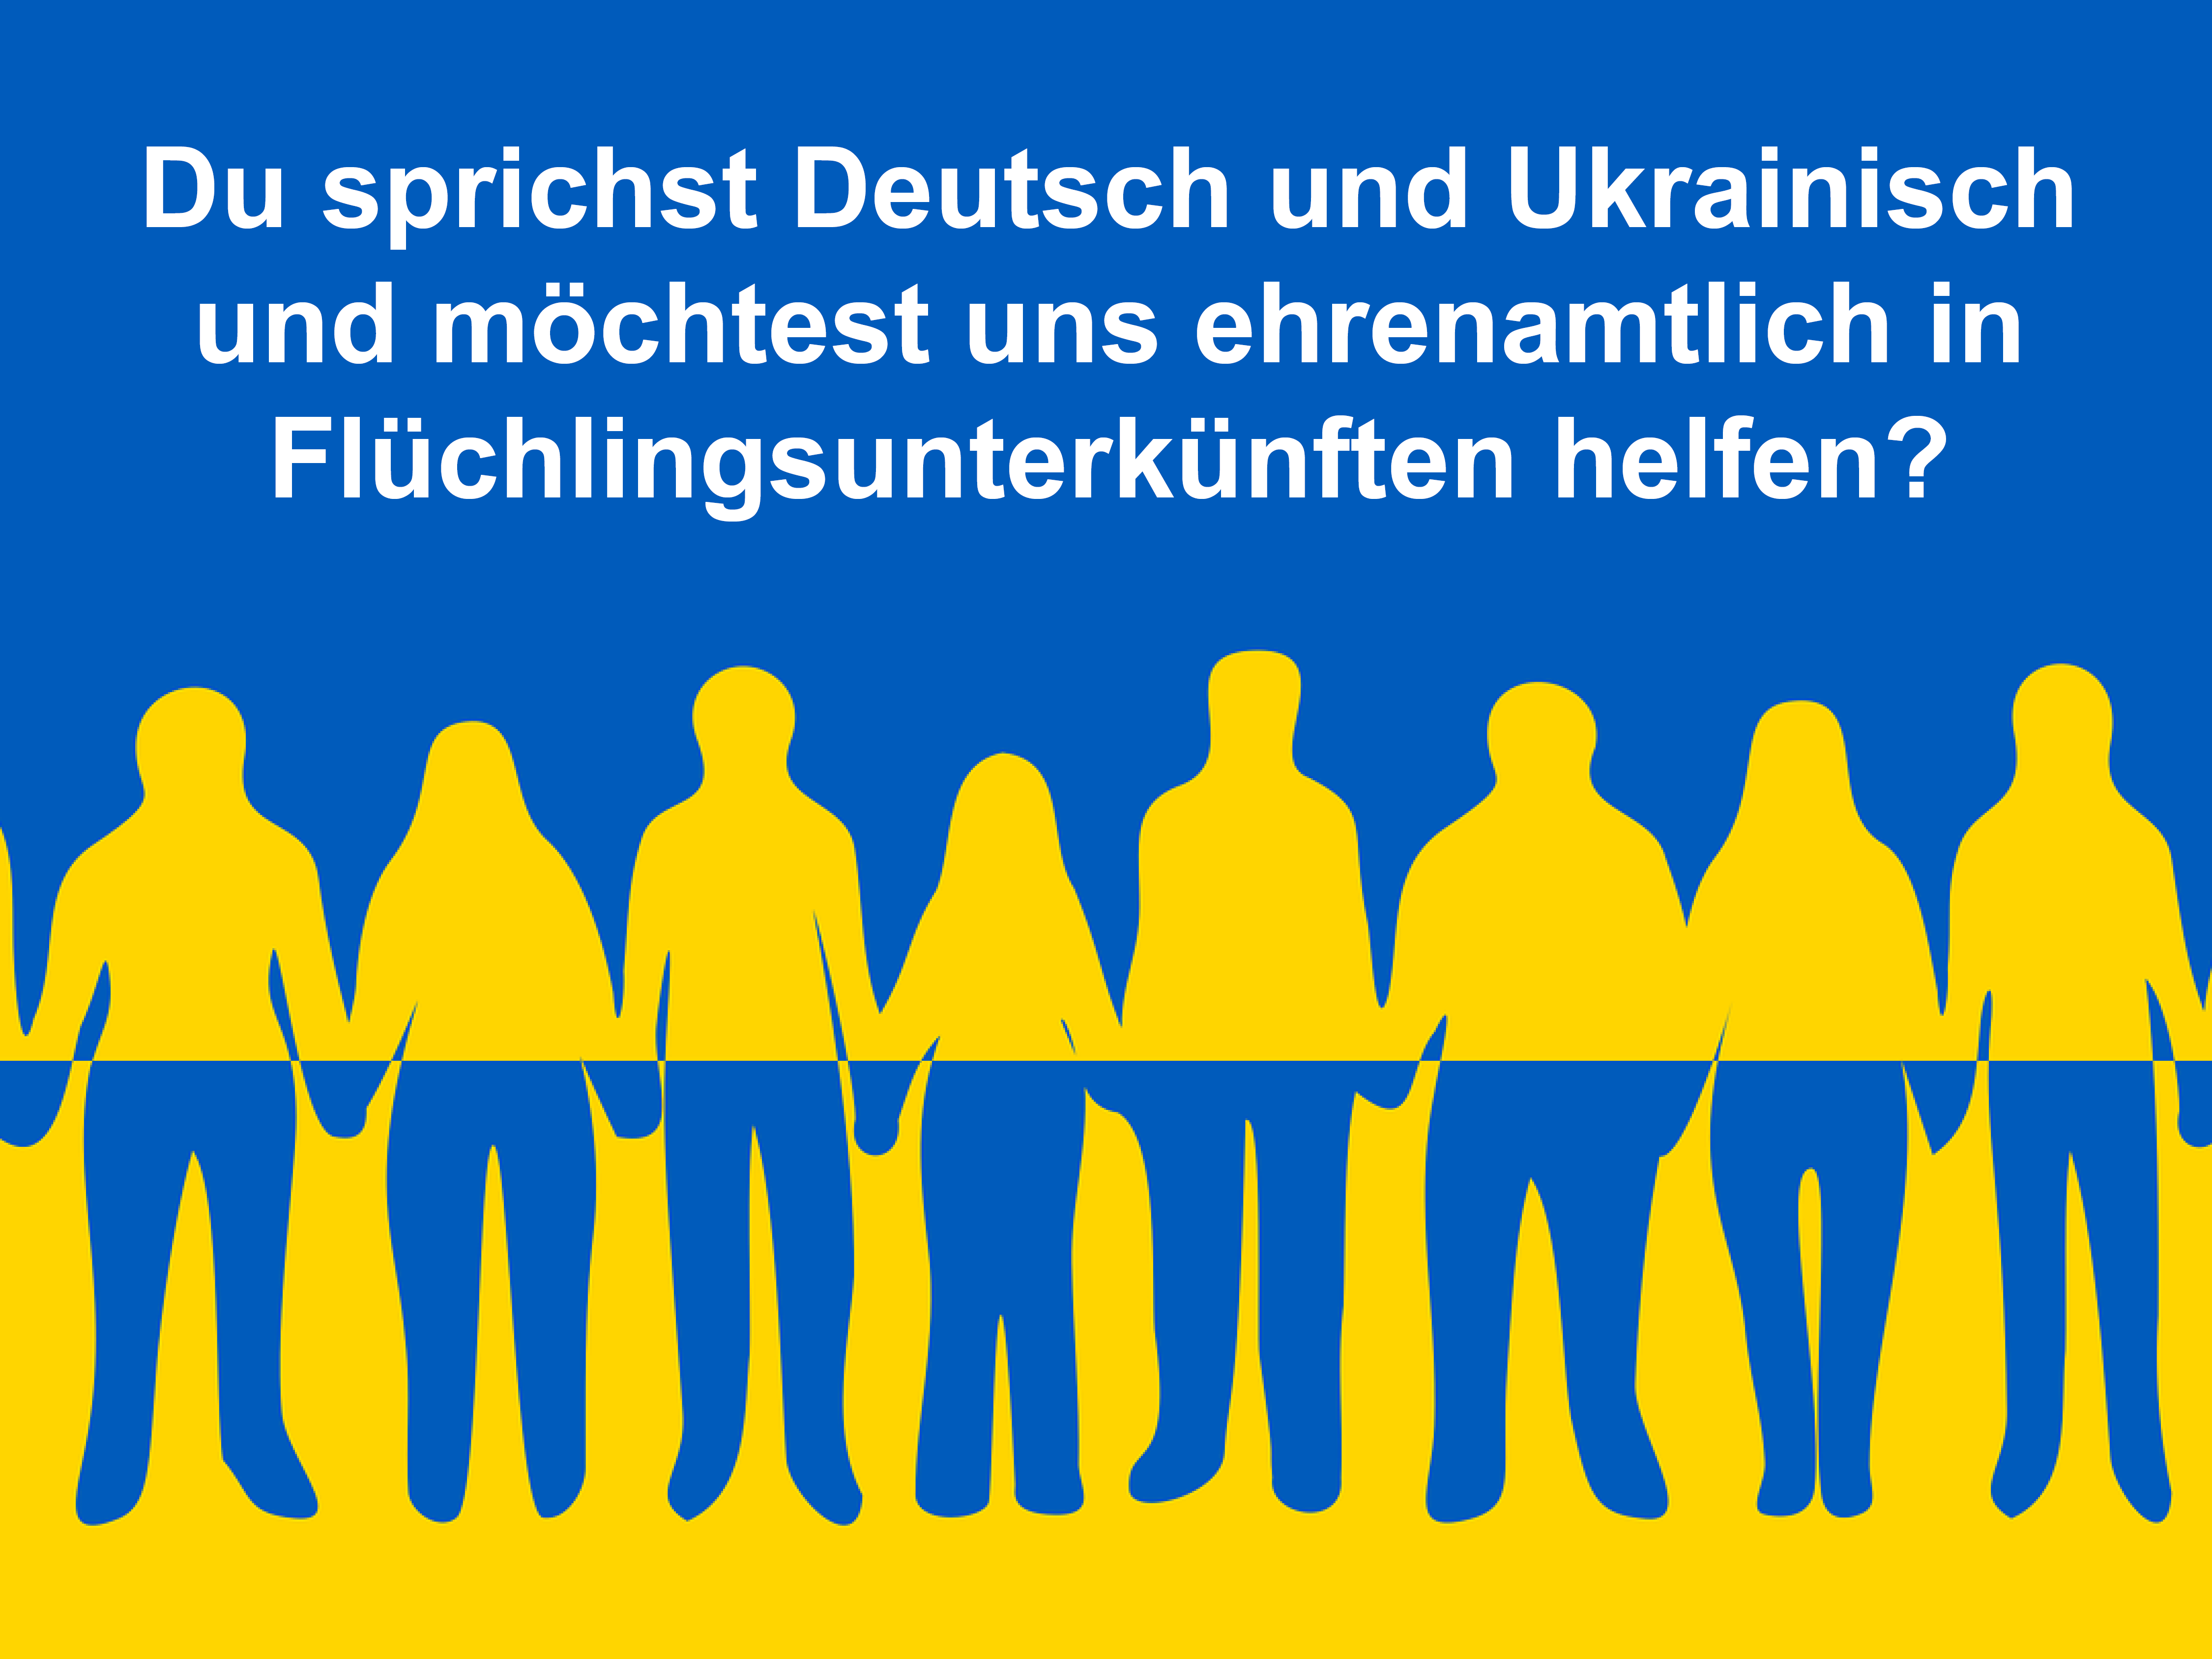 Ukraine Ehrenamt - Kopie.jpg